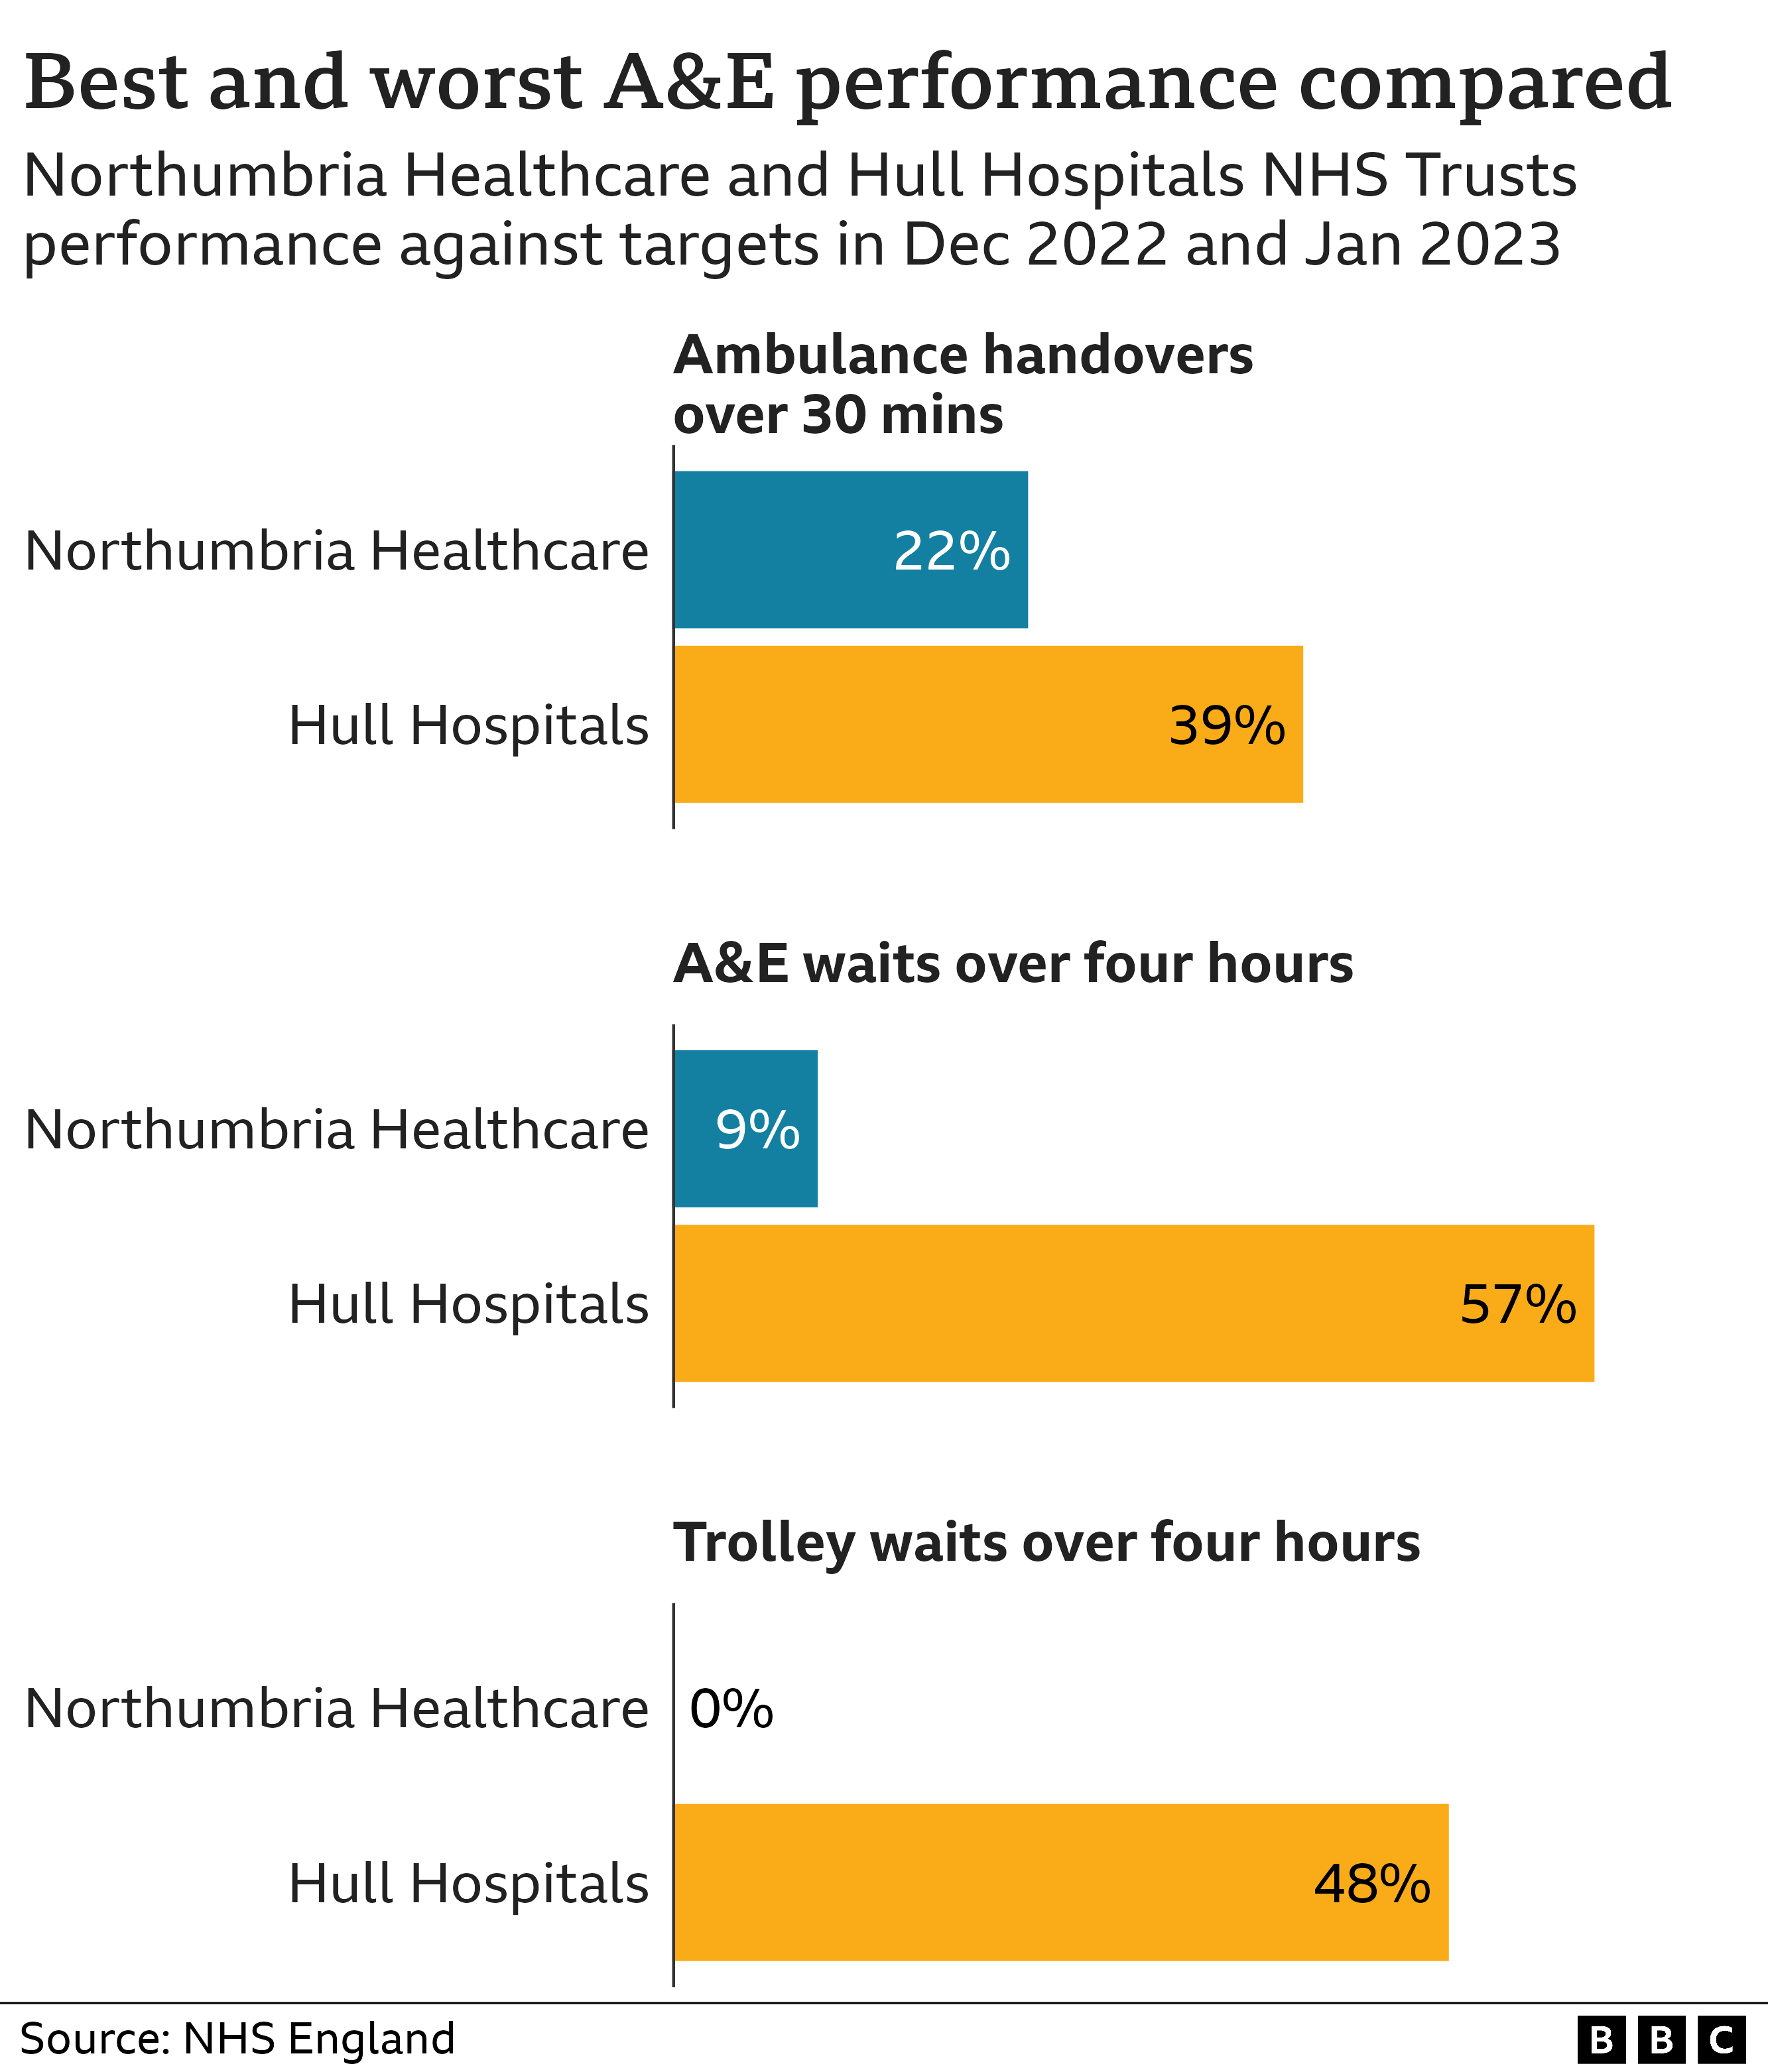 Гистограмма, показывающая ожидания скорой помощи более четырех часов, передачу машин скорой помощи более 30 минут и ожидание троллейбусов более четырех часов по сравнению с трастами NHS в Нортумбрии и Халле. В Халле было 39% передач в течение 30 минут, в то время как в Нортумбрии было 22%, в Халле было 57% ожиданий A&E более четырех часов, в то время как в Нортумбрии было 9%, в Халле было 48% ожиданий троллейбусов более четырех часов, в то время как в Нортумбрии было 0%